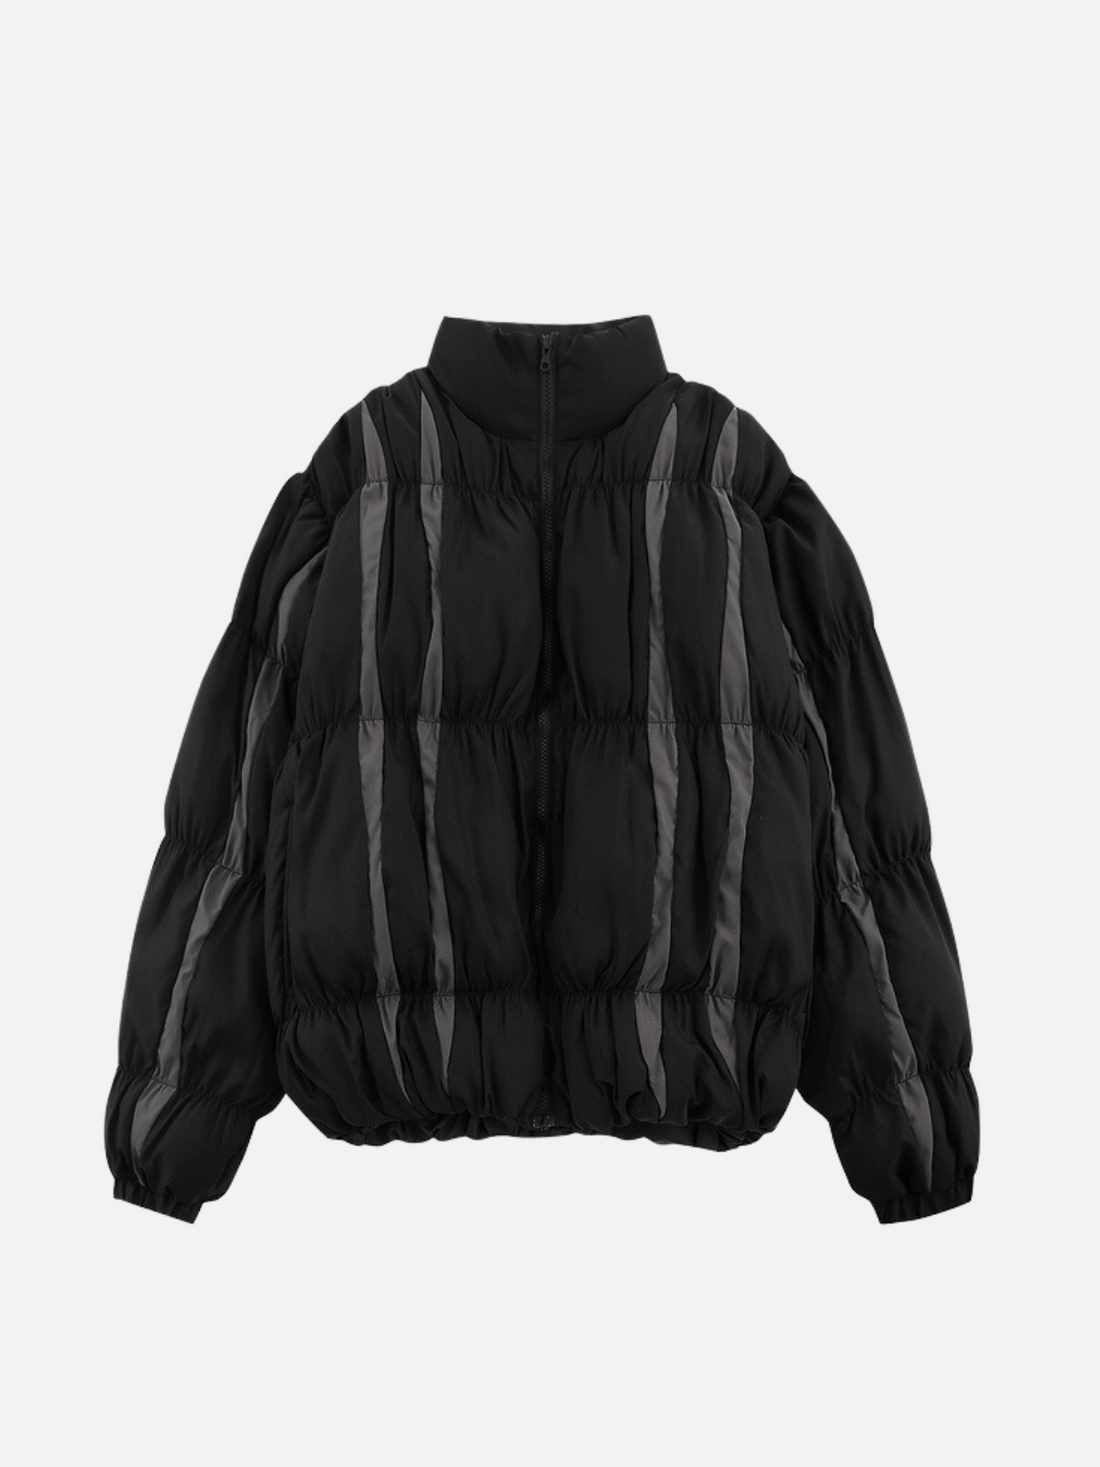 METROCHIC- Graphic Puffer Jacket | Teenwear.eu